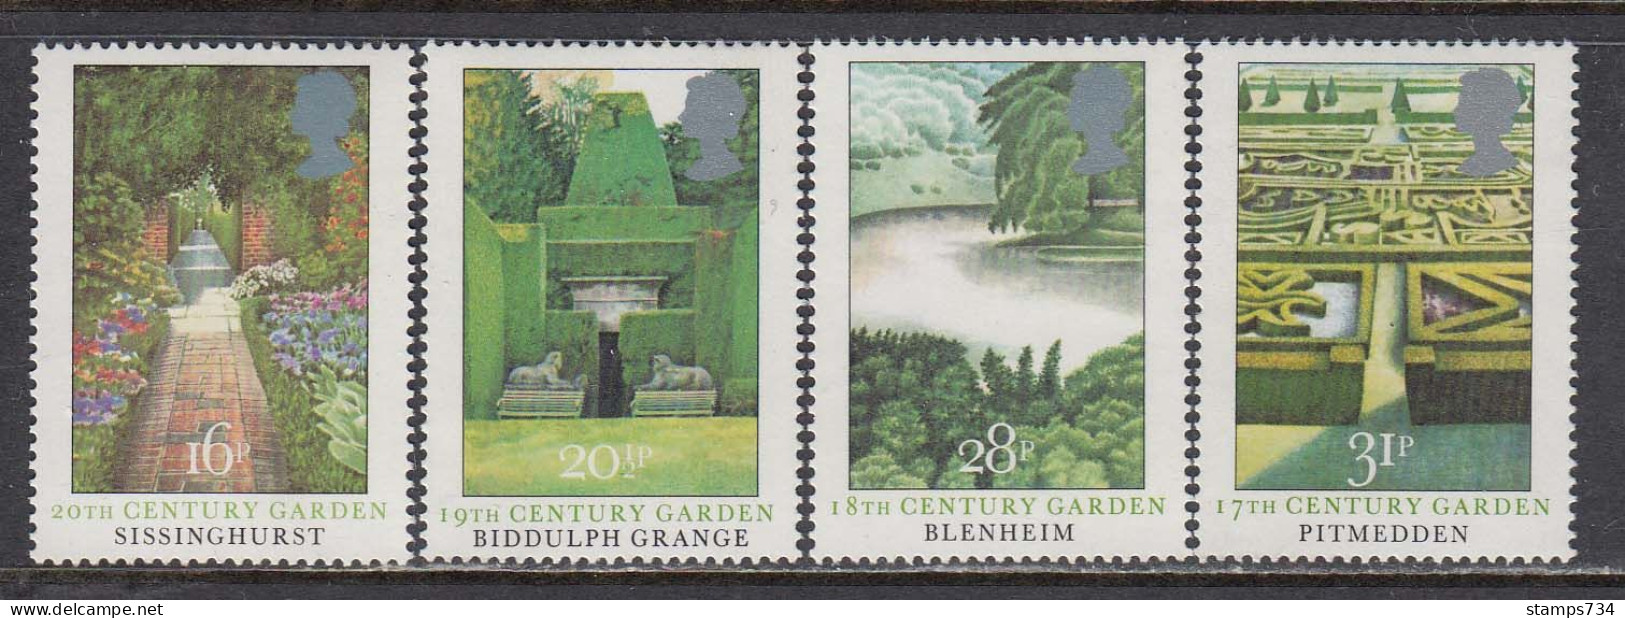 Great Britain 1983 - British Gardens, Set Of 4 Stamps, MNH** - Ongebruikt